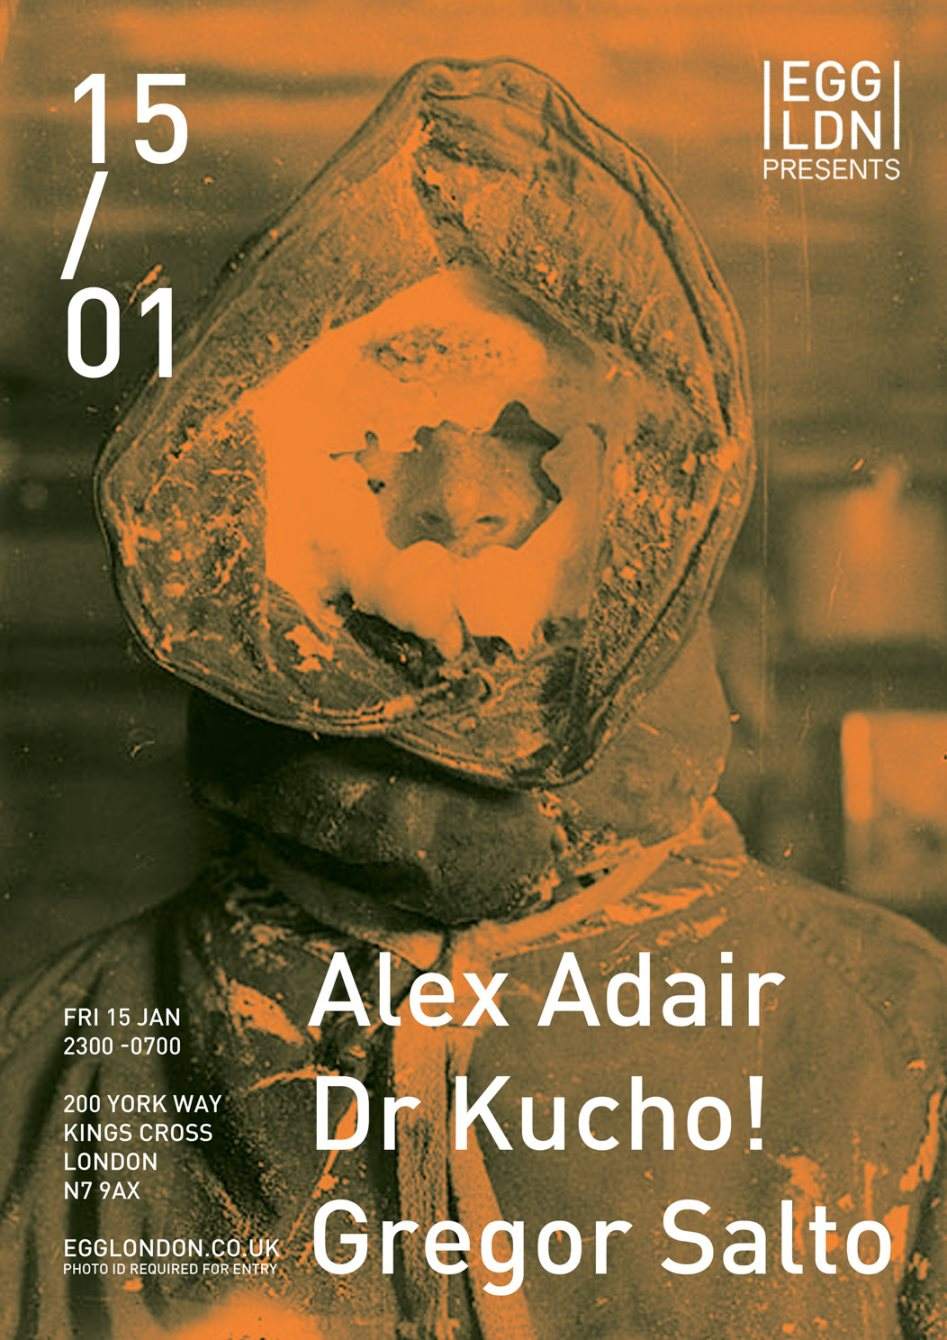 Egg presents: Alex Adair, Dr Kucho! & Gregor Salto - Página frontal